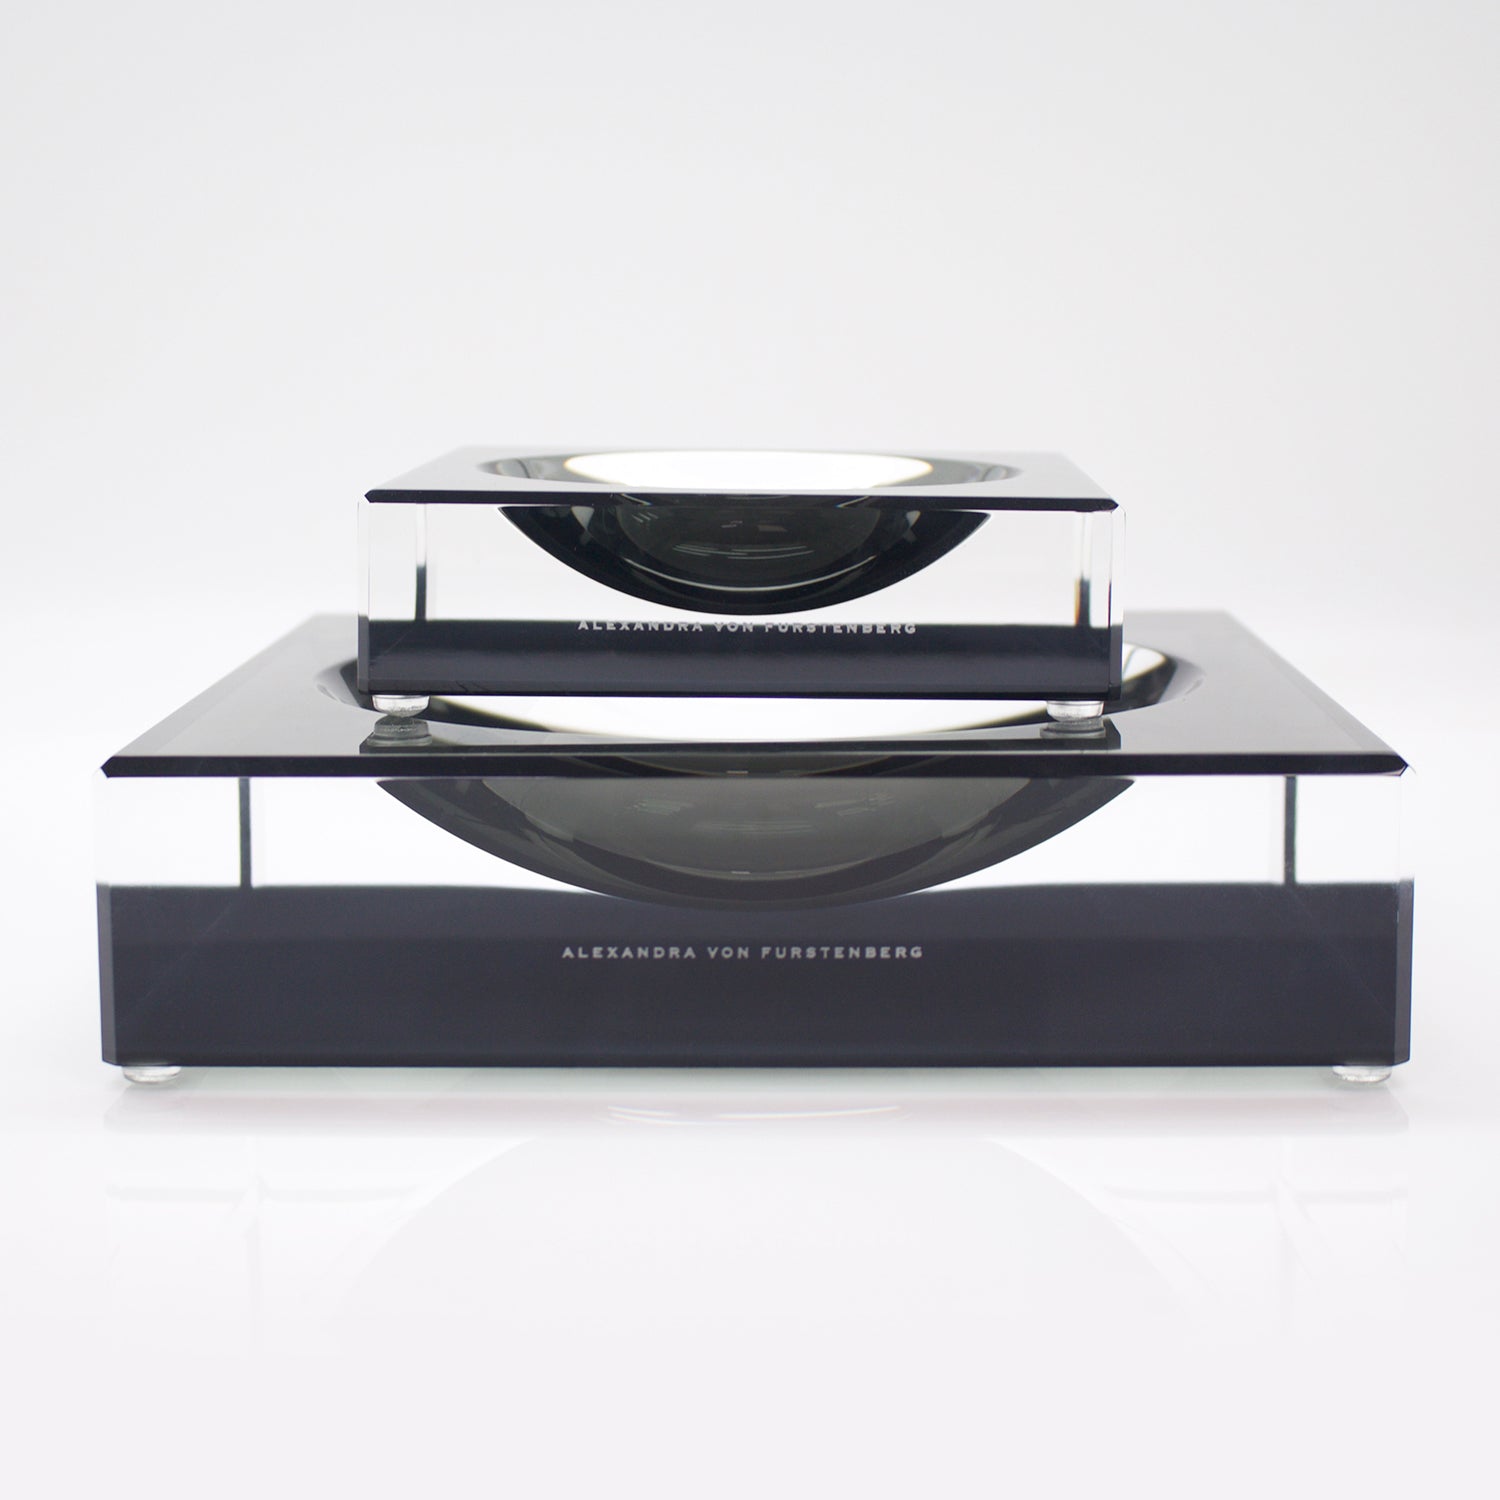 Minimalistic, sleek centerpiece by Alexandra Von Furstenberg exudes elegance.